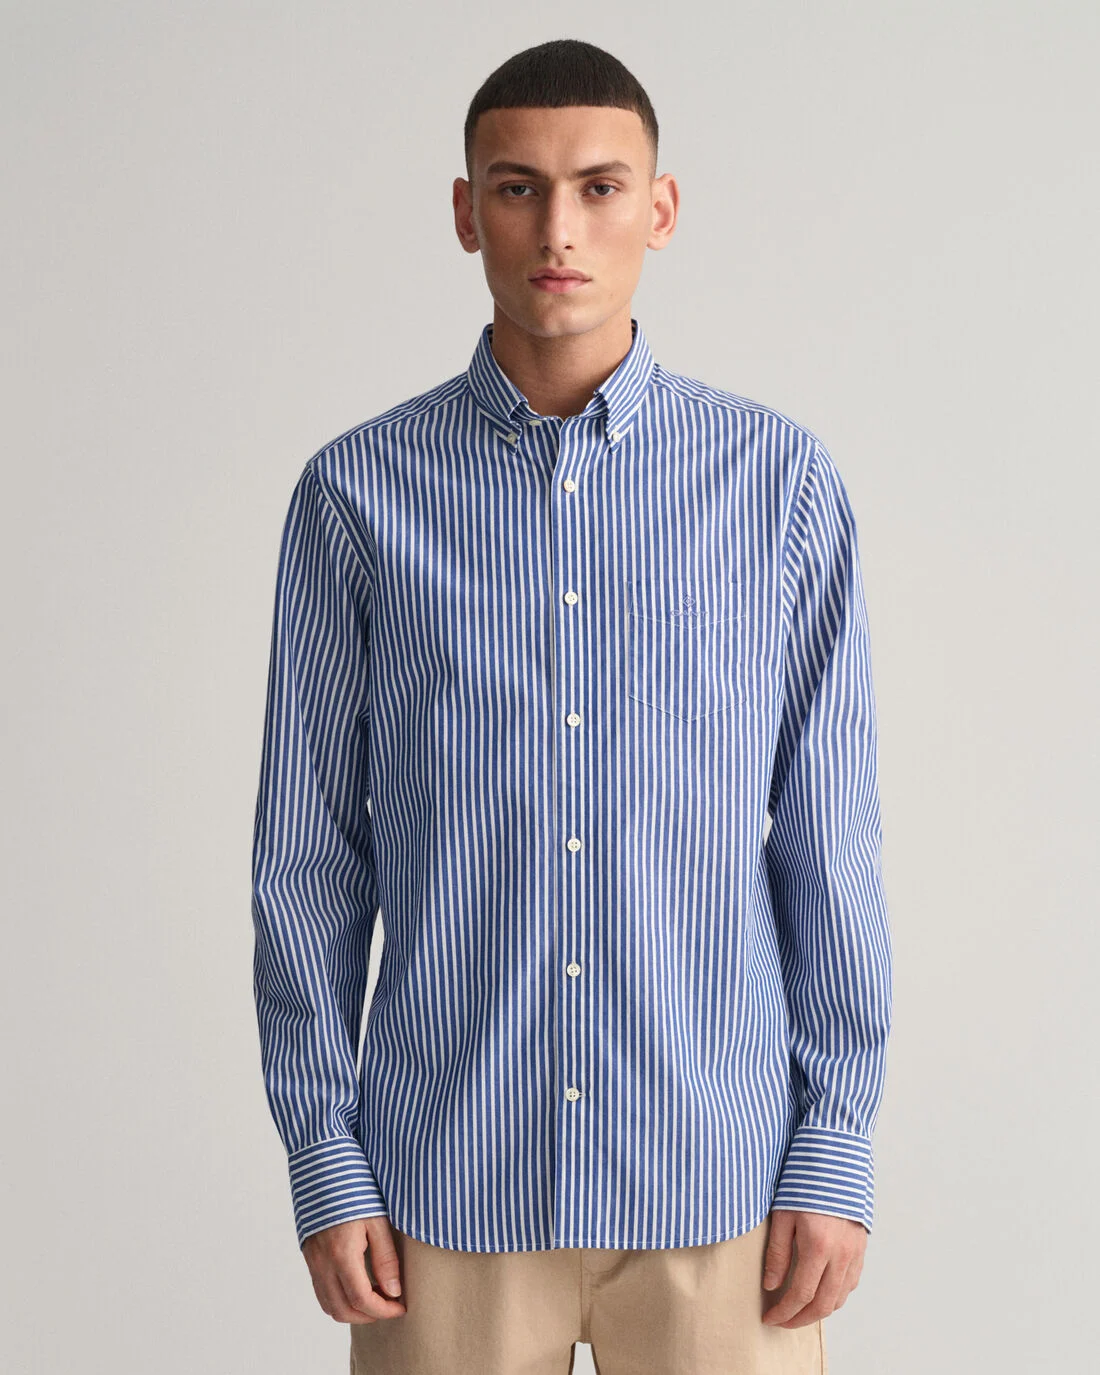 Gant - Broadcloath Overhemd Strepen Blauw - M - Heren - Regular-fit